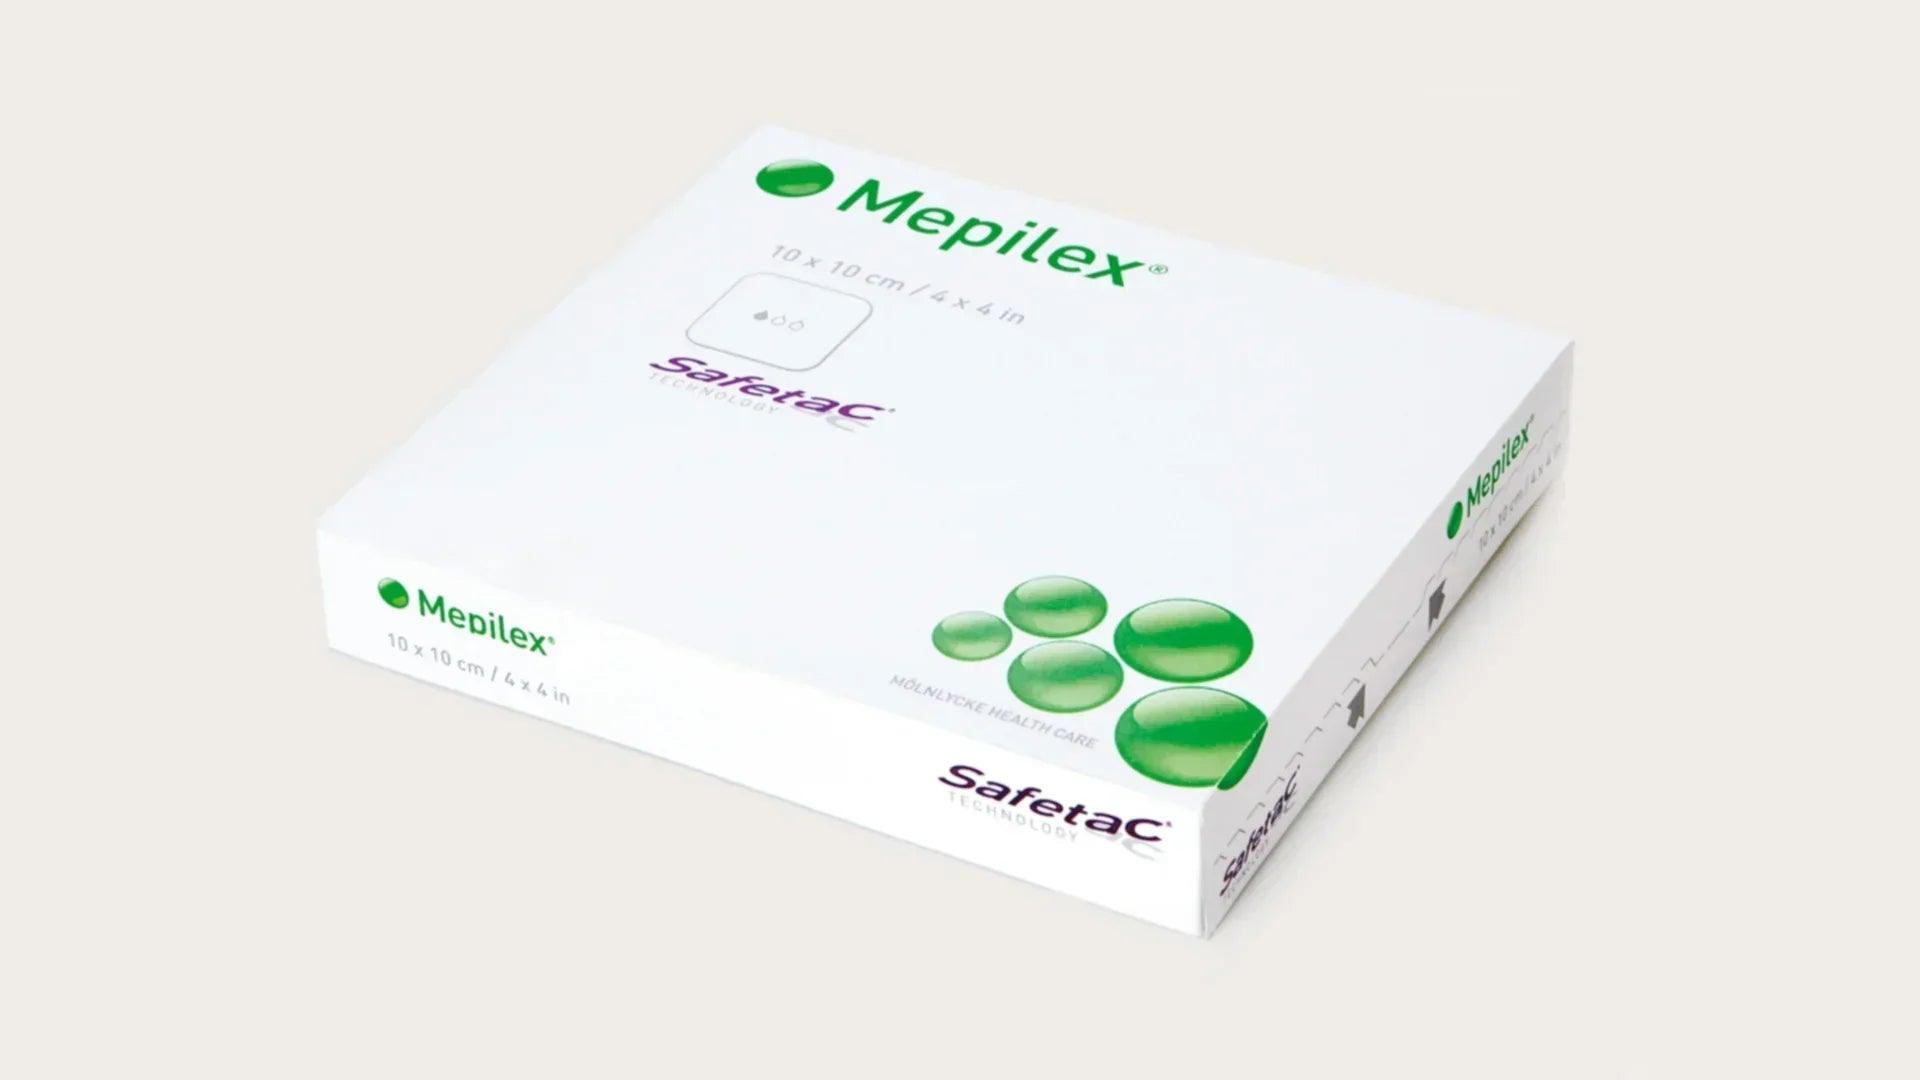 Mepilex Soft Silicone Foam Dressing by Molnlycke